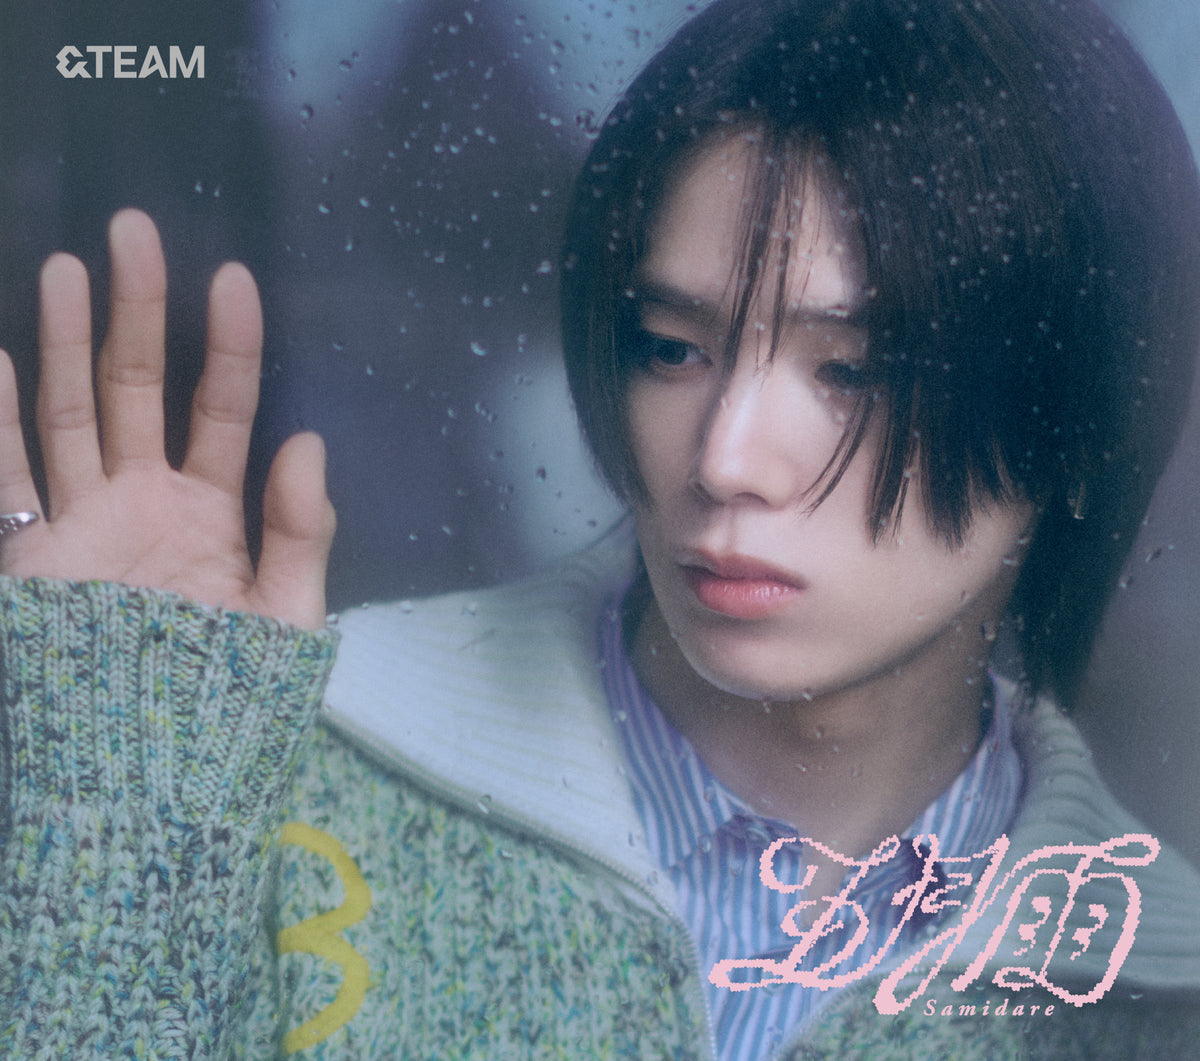 【ポストカード付】 &TEAM 1st SINGLE 五月雨 ( Samidare ) 【 メンバーソロジャケット盤 初回プレス 】(CD)